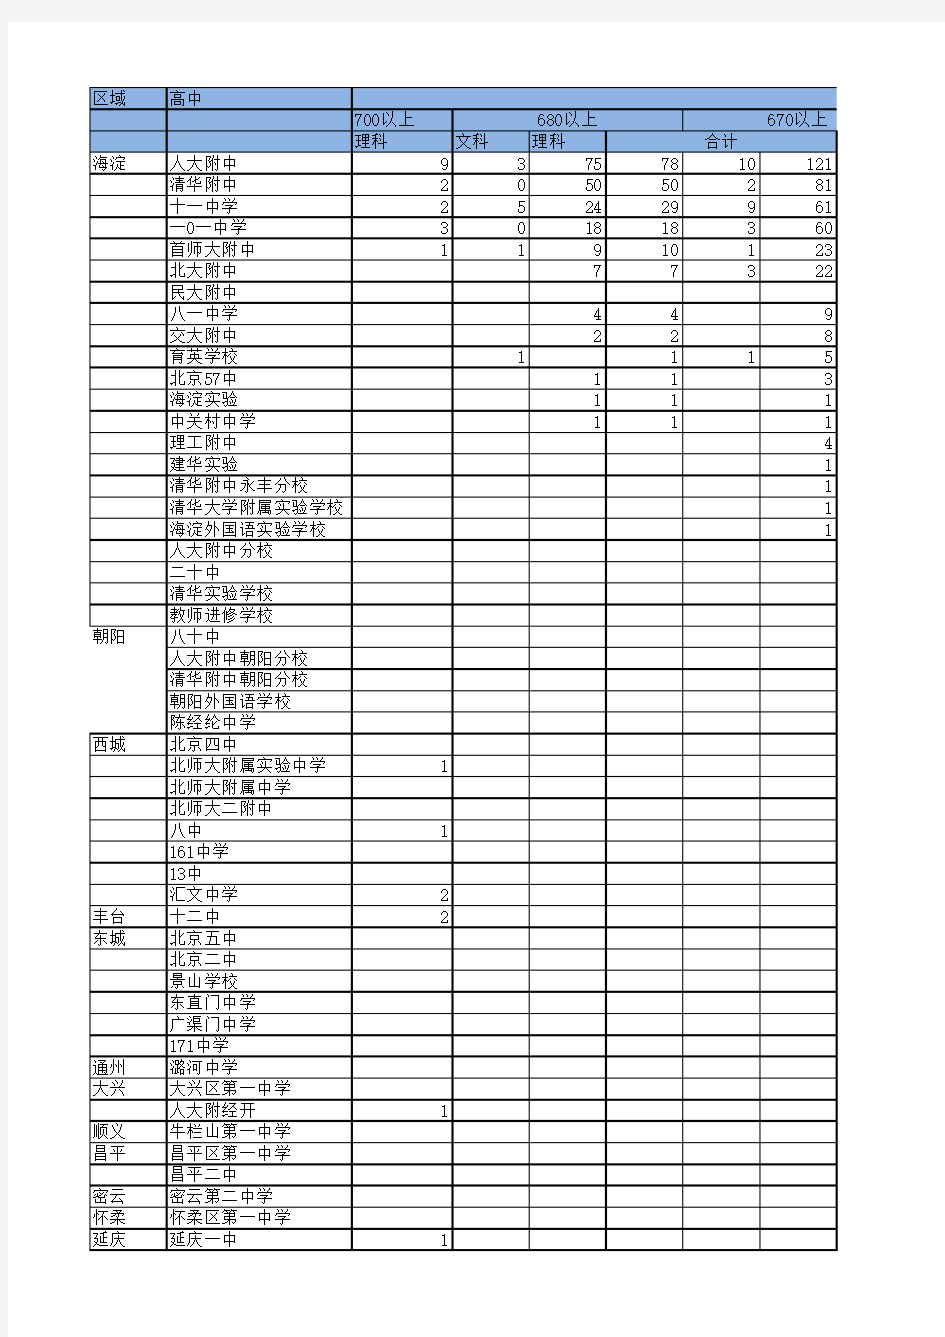 北京各重点高中2019高考高分成绩-清北人数-中考成绩对比表